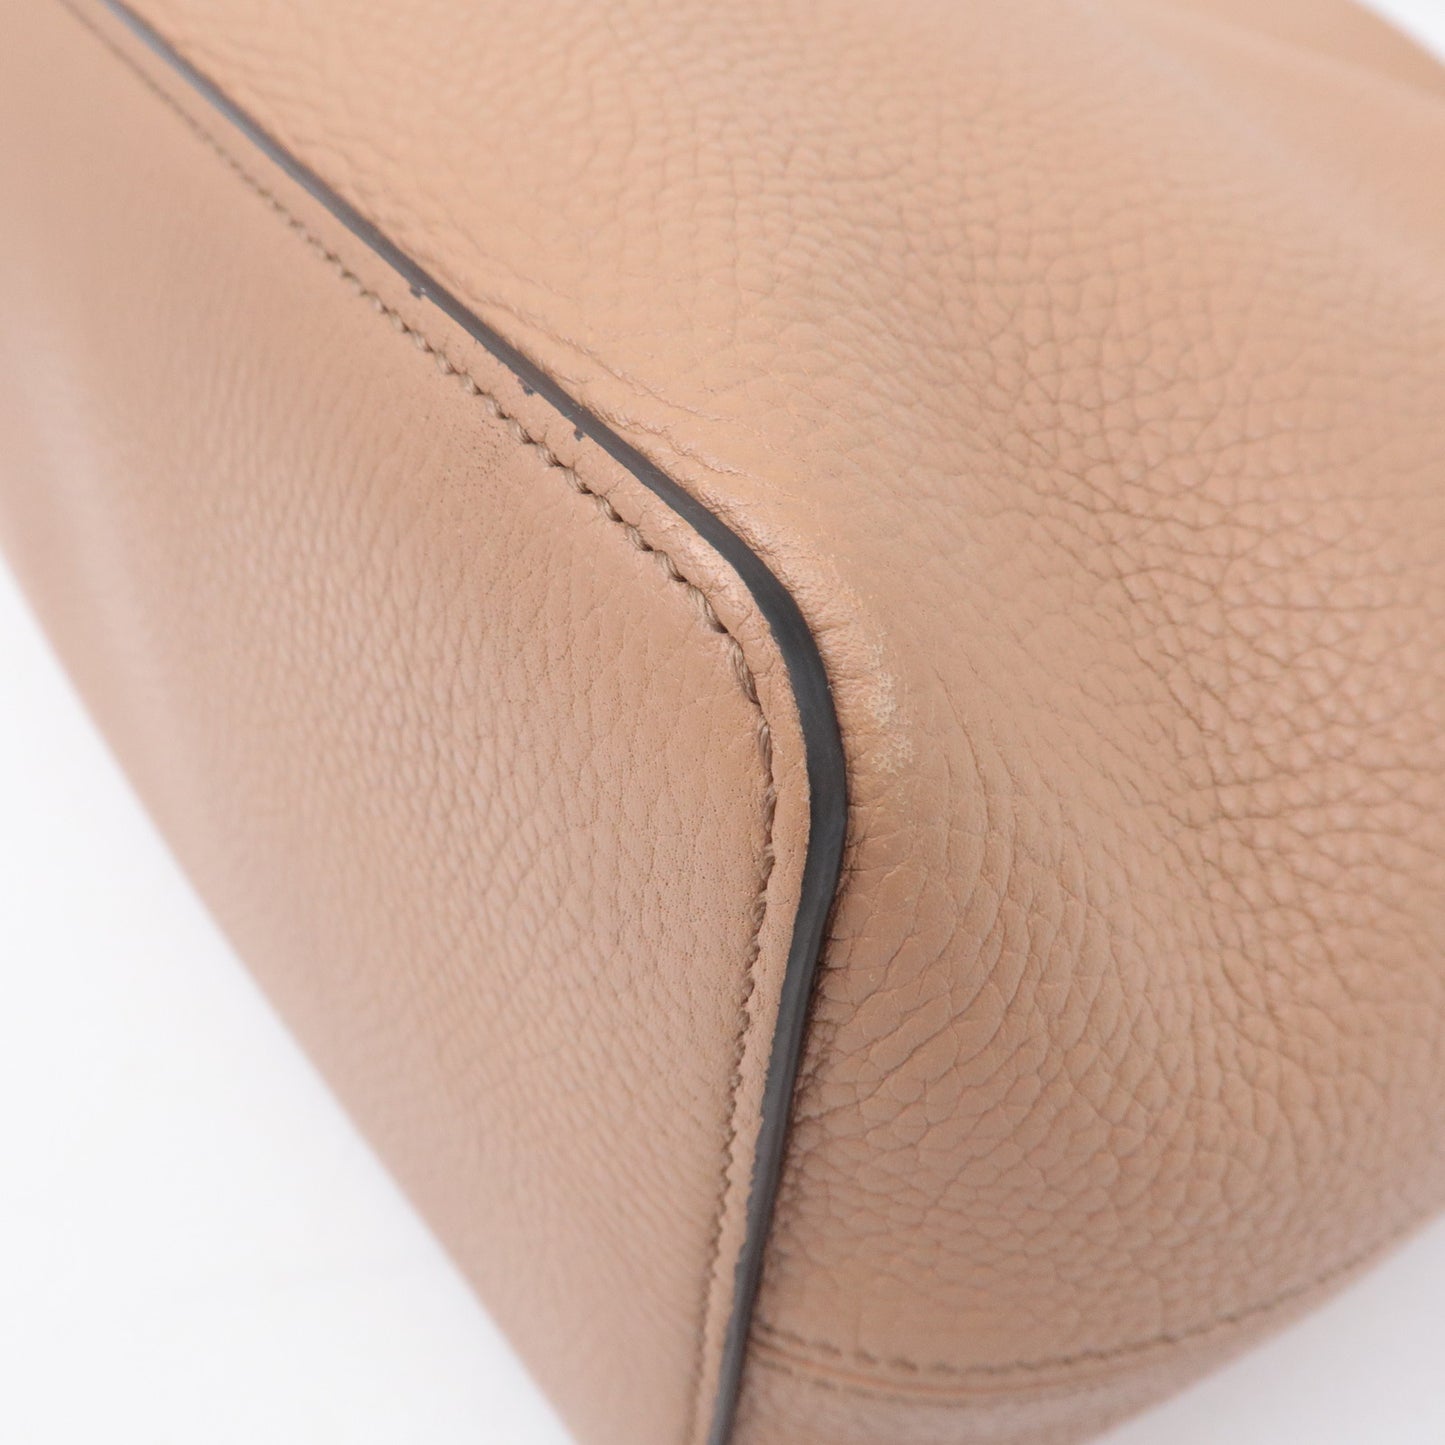 GUCCI-SOHO-Leather-Shoulder-Bag-Hand-Bag-Pink-Beige-536194 – dct-ep_vintage  luxury Store